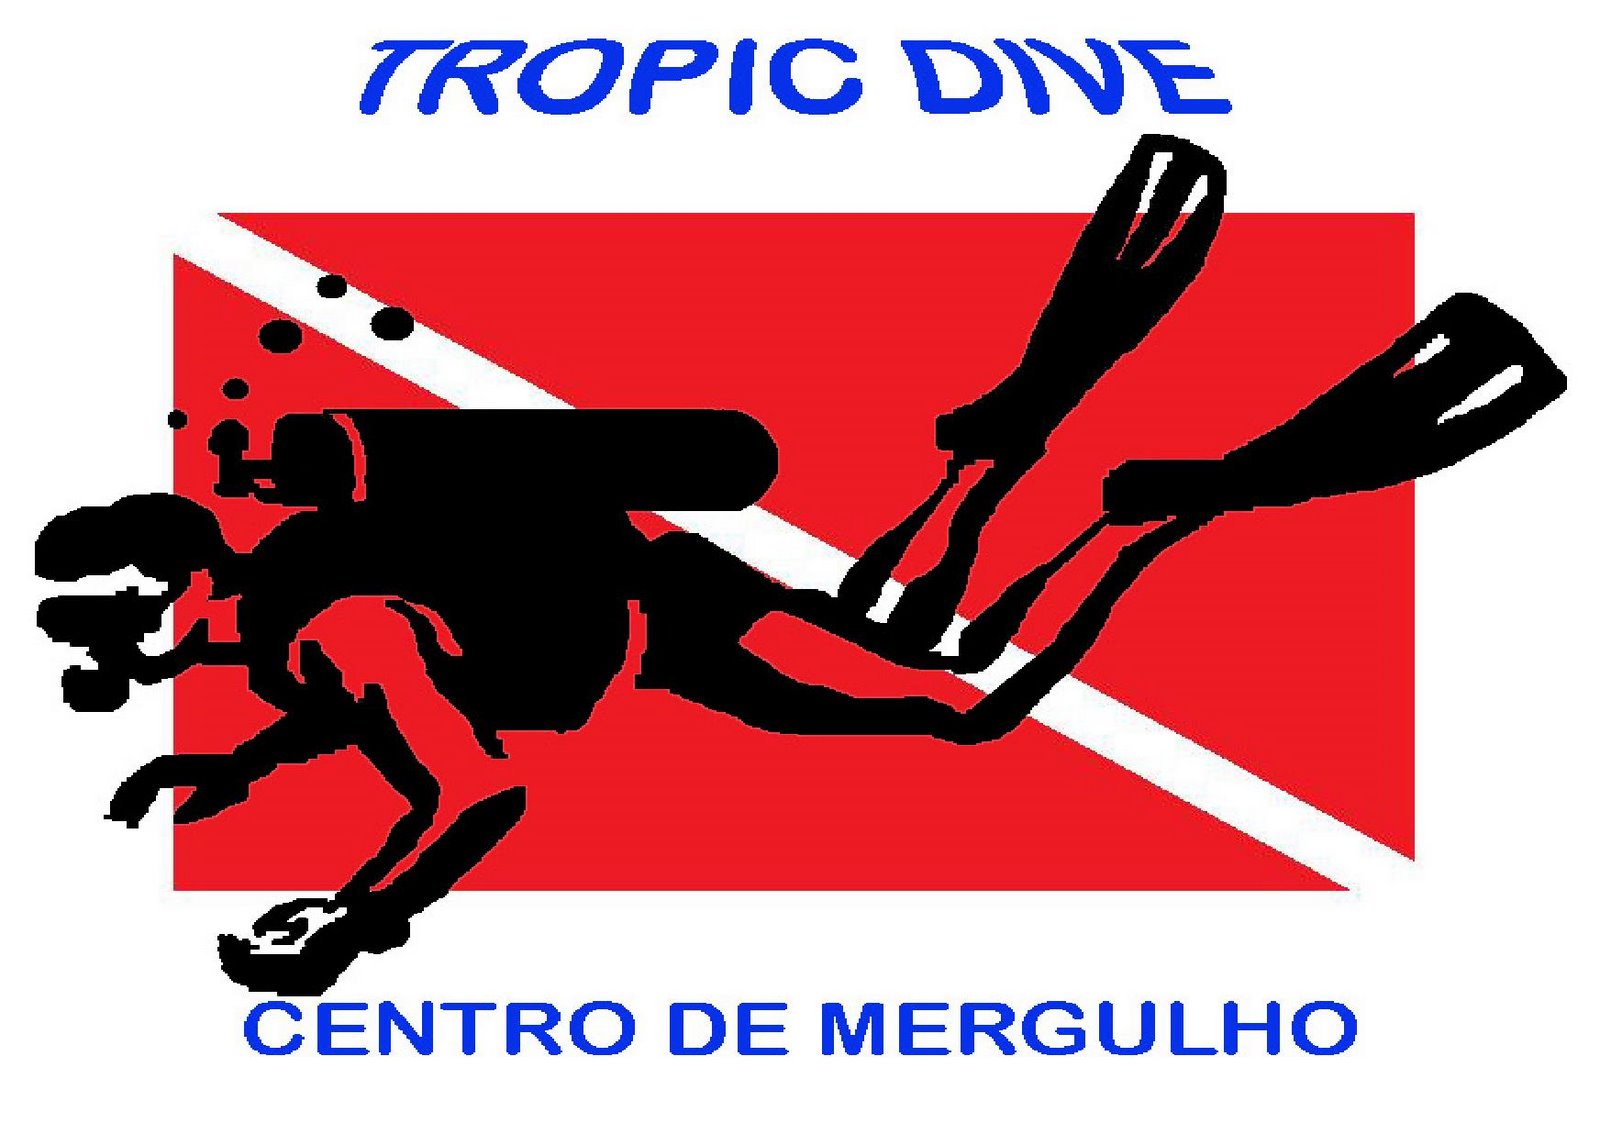 Tropic Dive - Centro de Mergulho